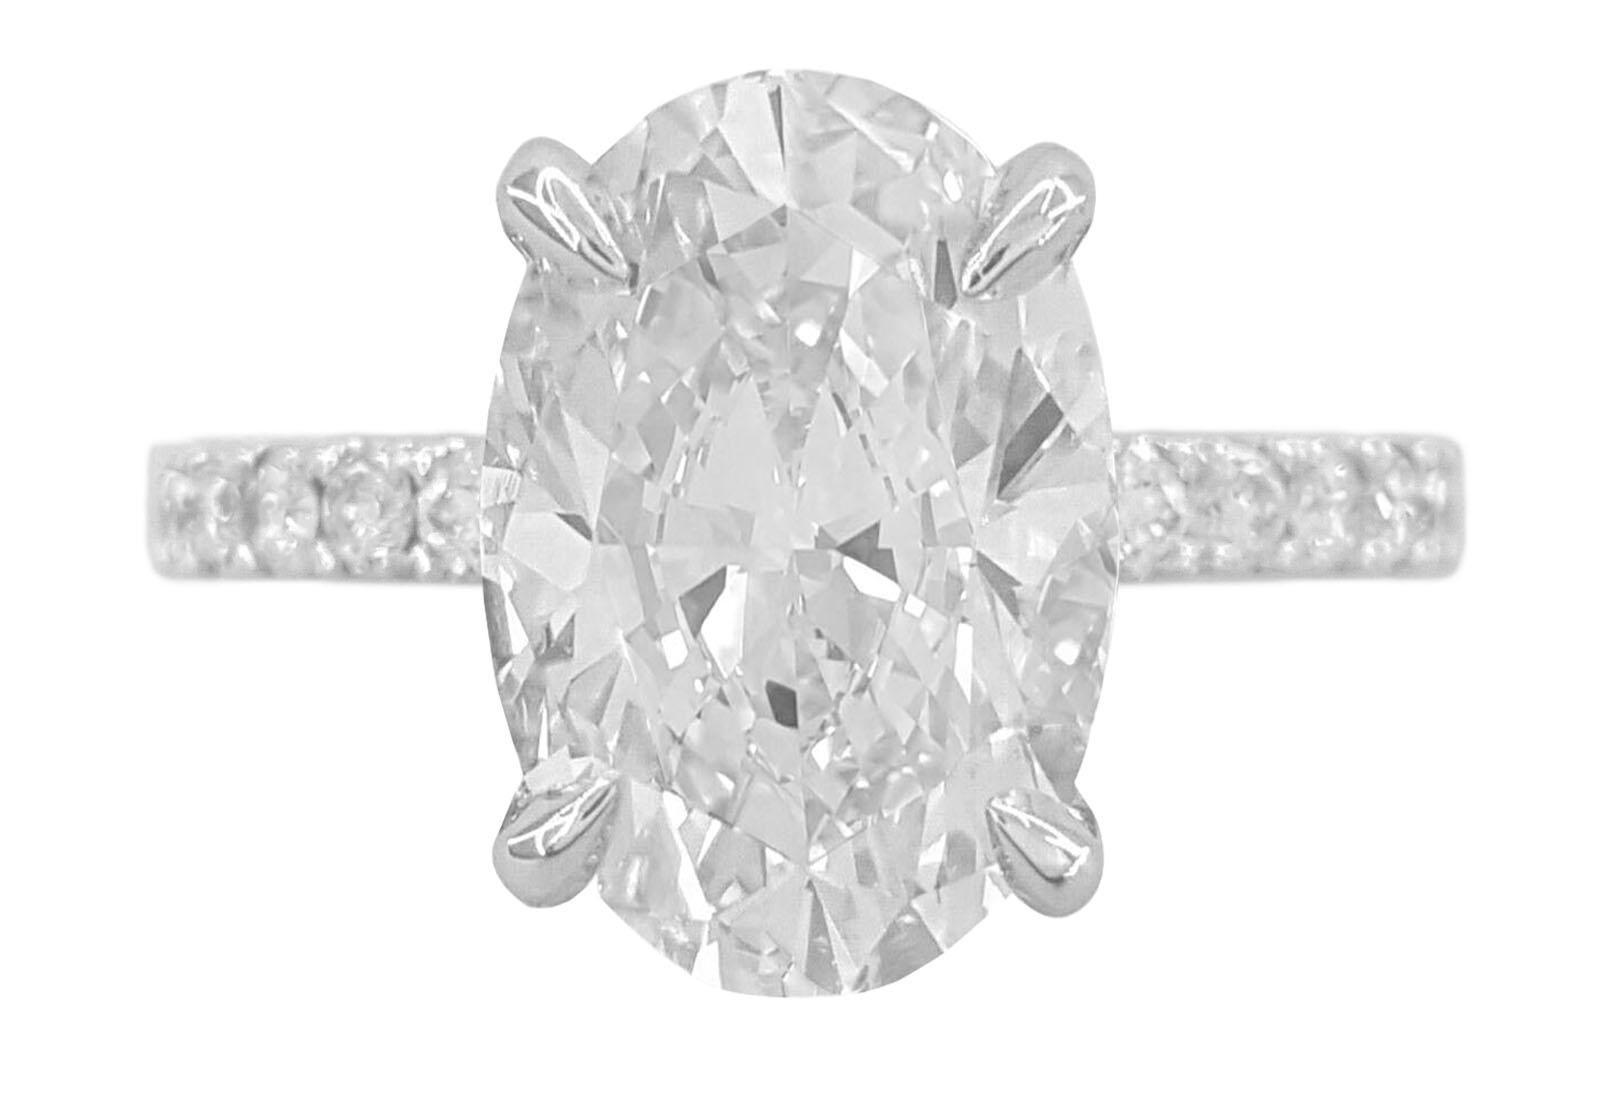 Cette étonnante bague en or blanc 18 carats de 4,00 carats, certifiée par la GIA avec une couleur E et une pureté VS, est ornée d'un magnifique diamant solitaire serti dans une monture pavée, qui respire l'élégance et la sophistication.
Au cœur de